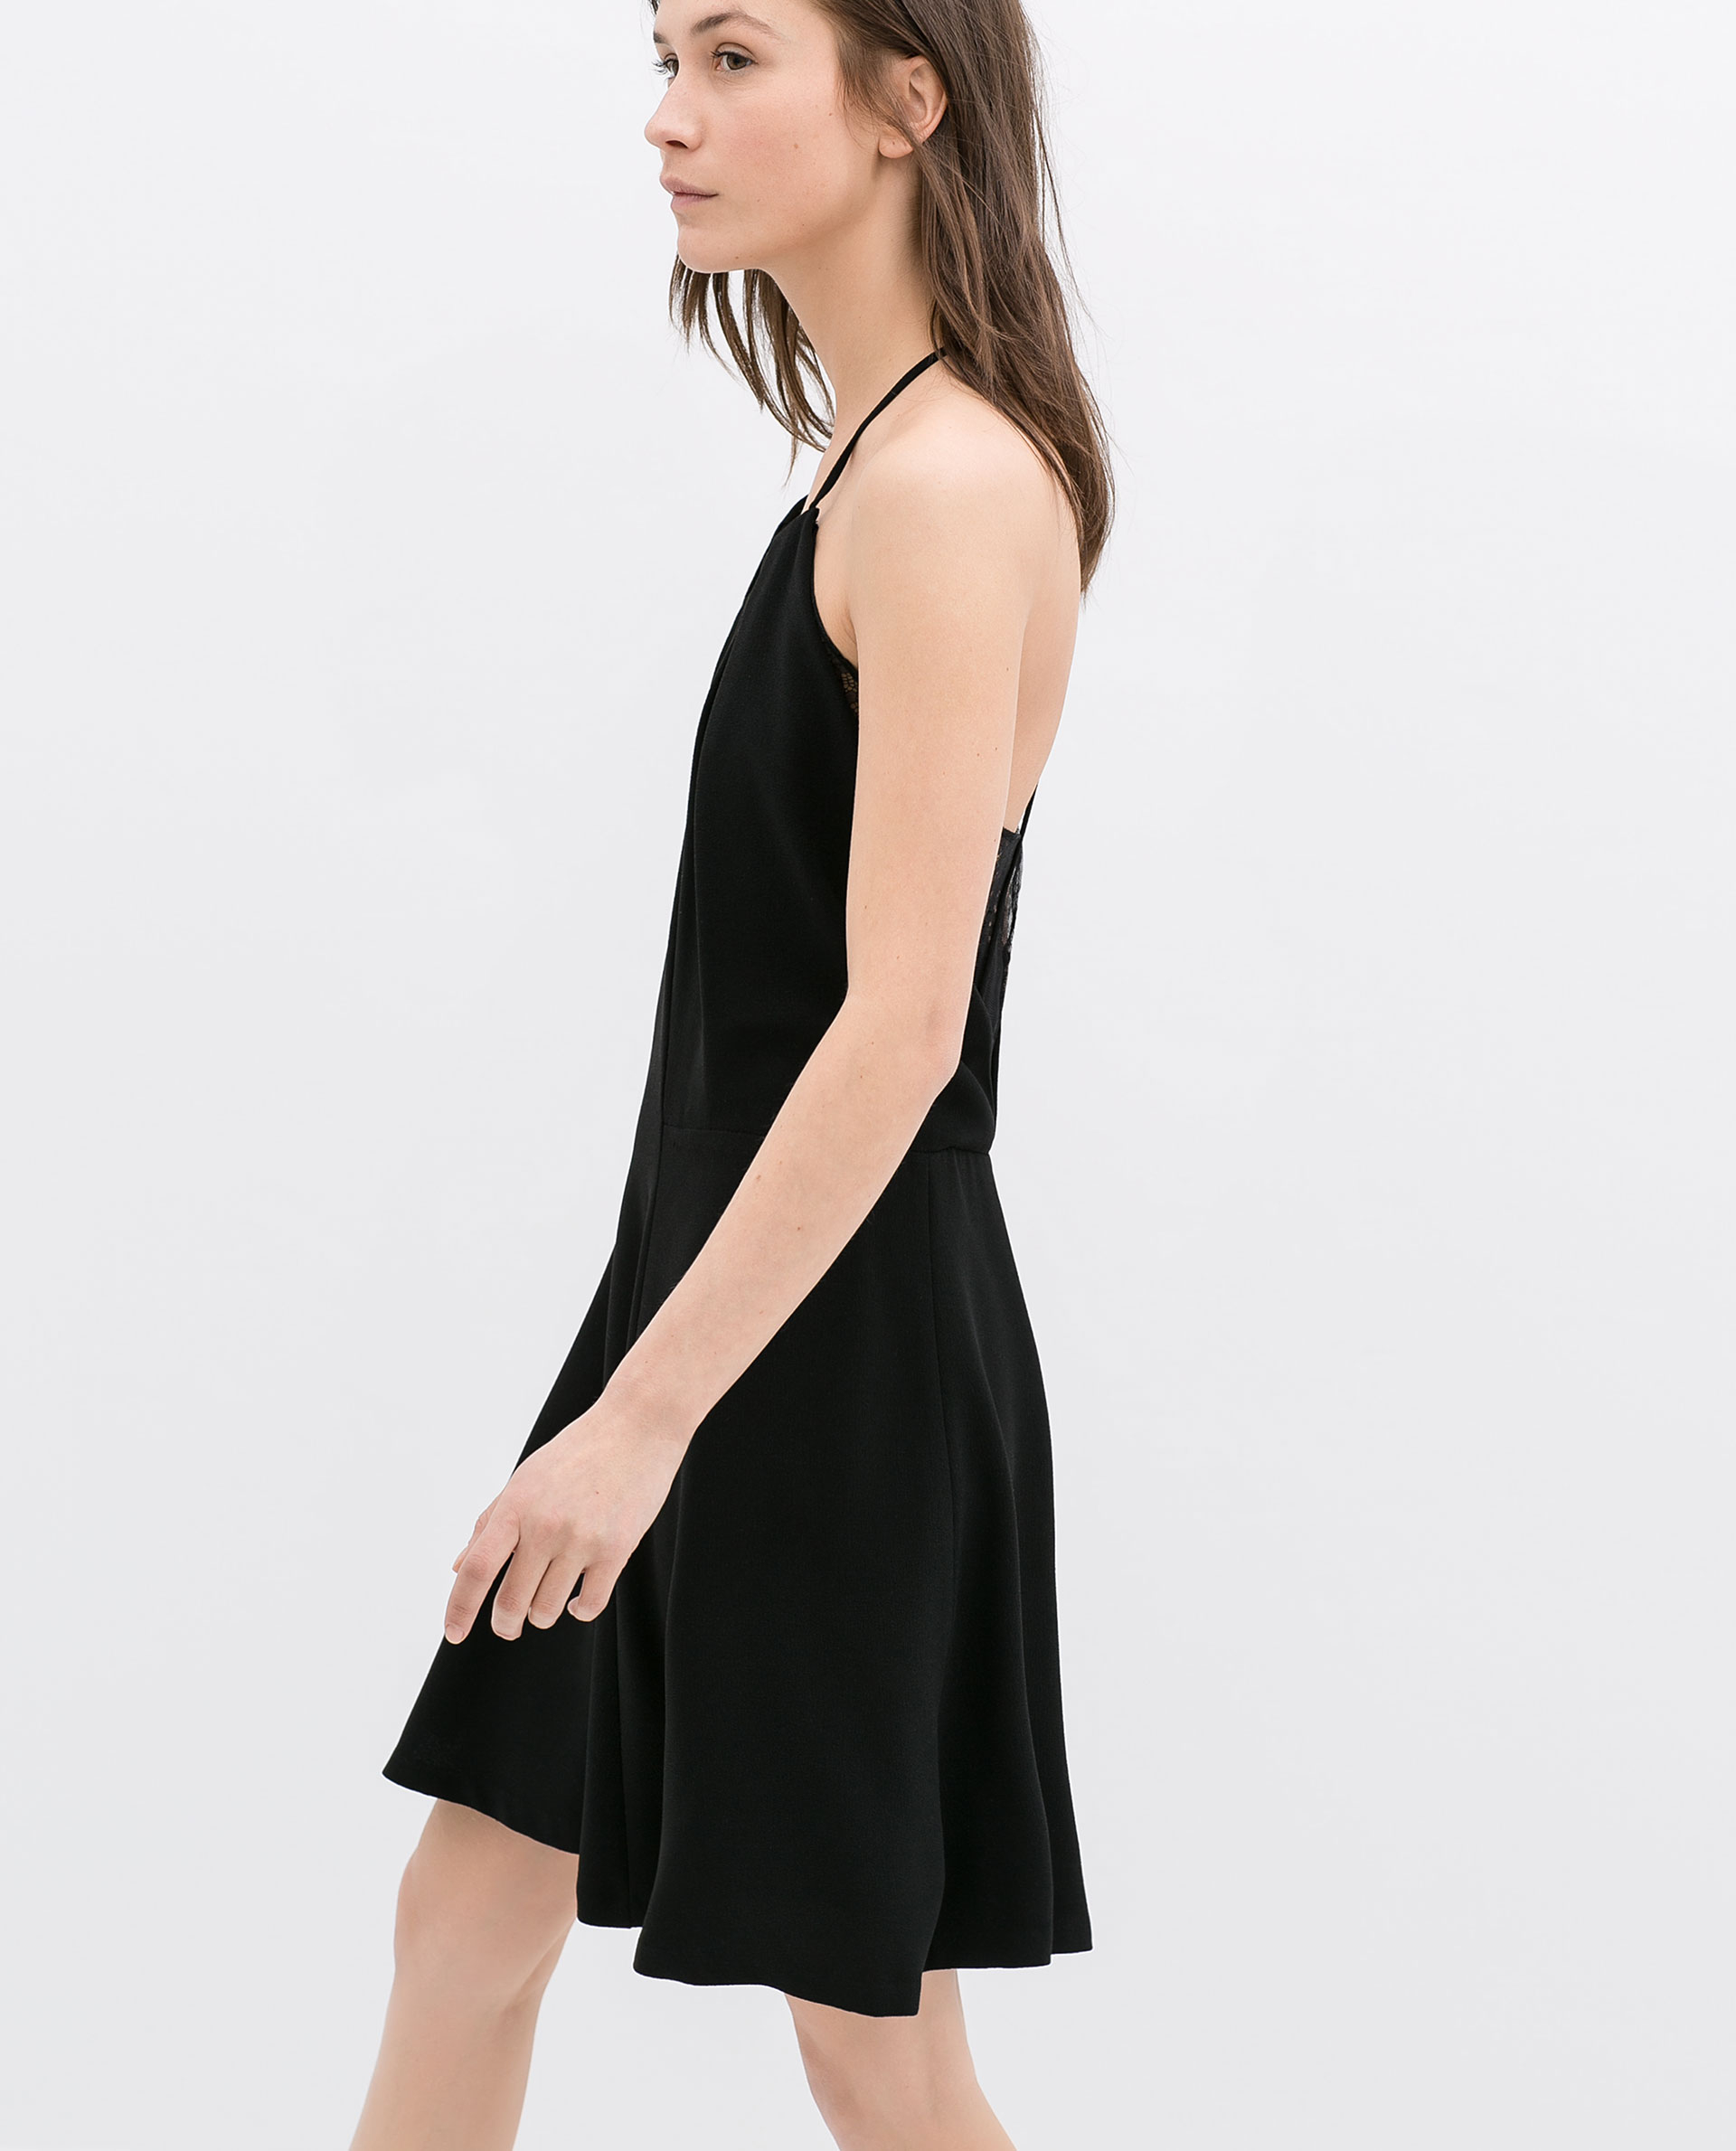 Zara Openback Lace Dress in Black | Lyst